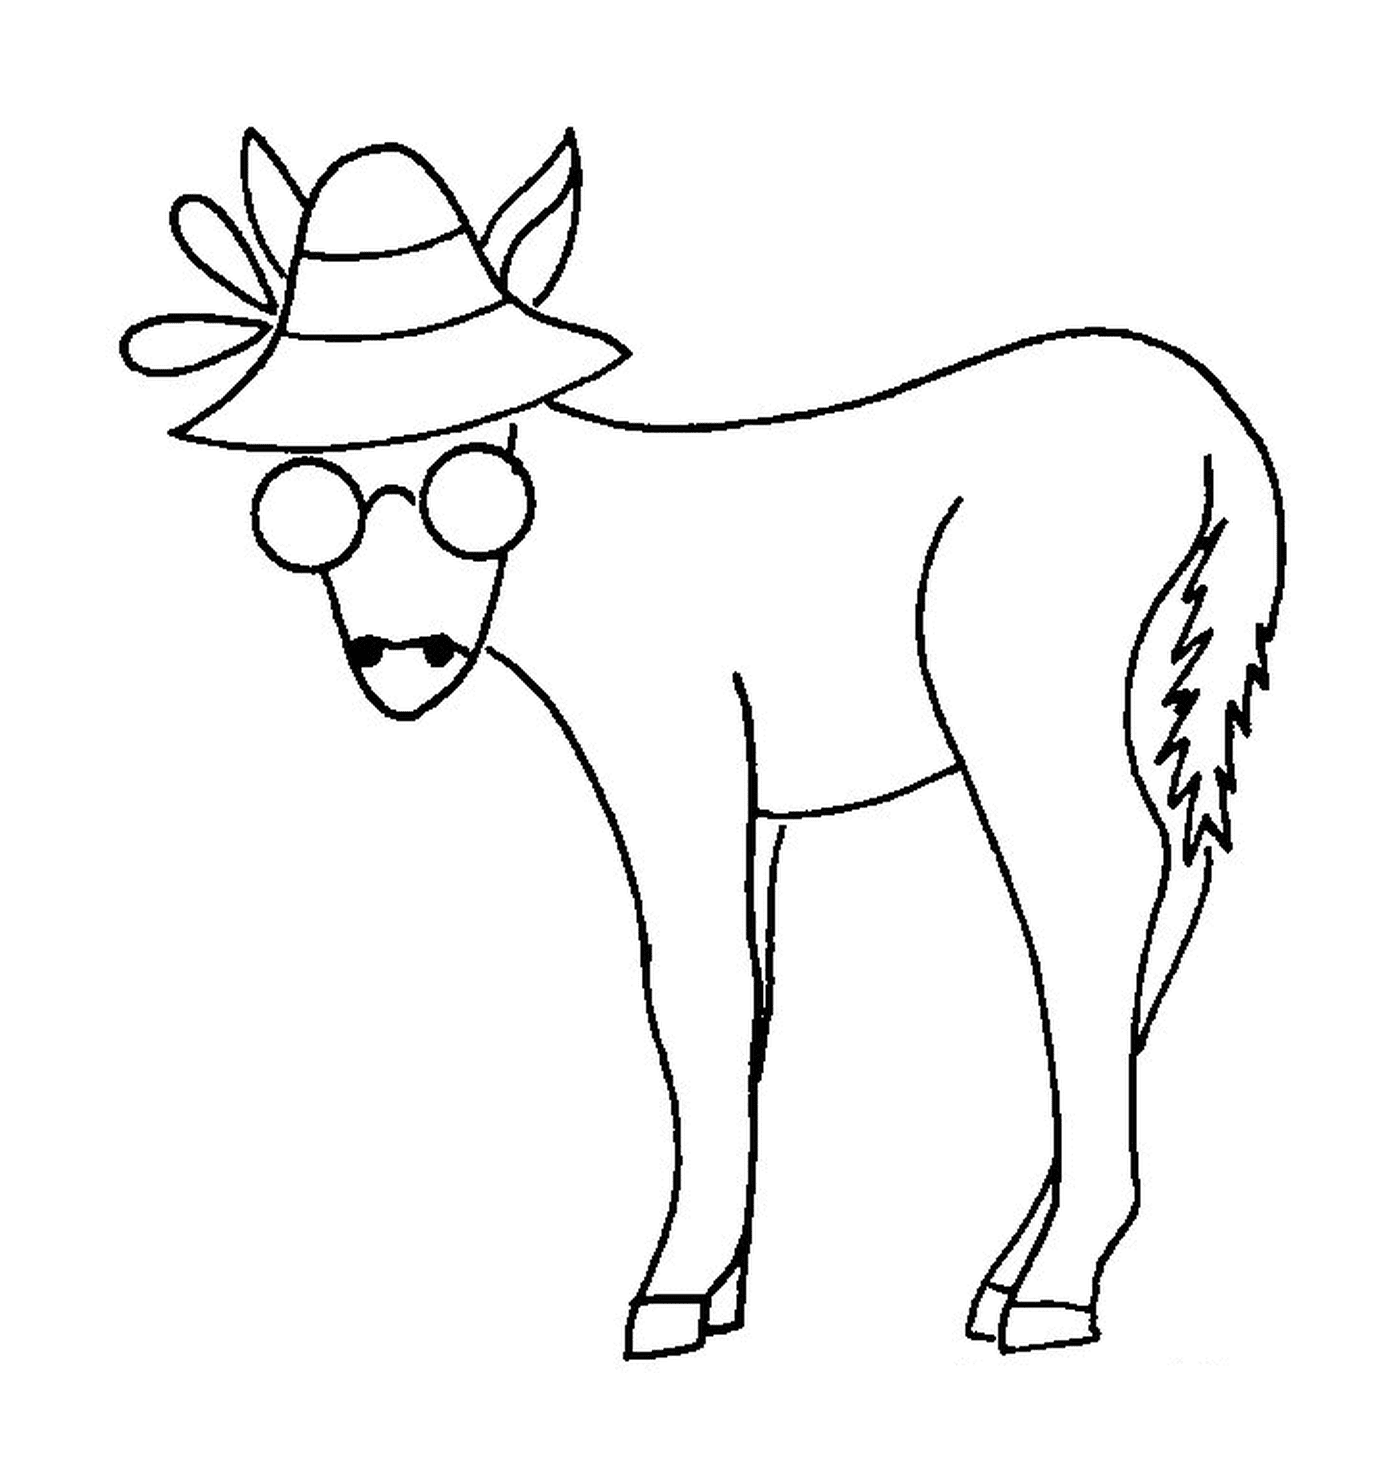  Лошадь с шляпой и очками на голове 